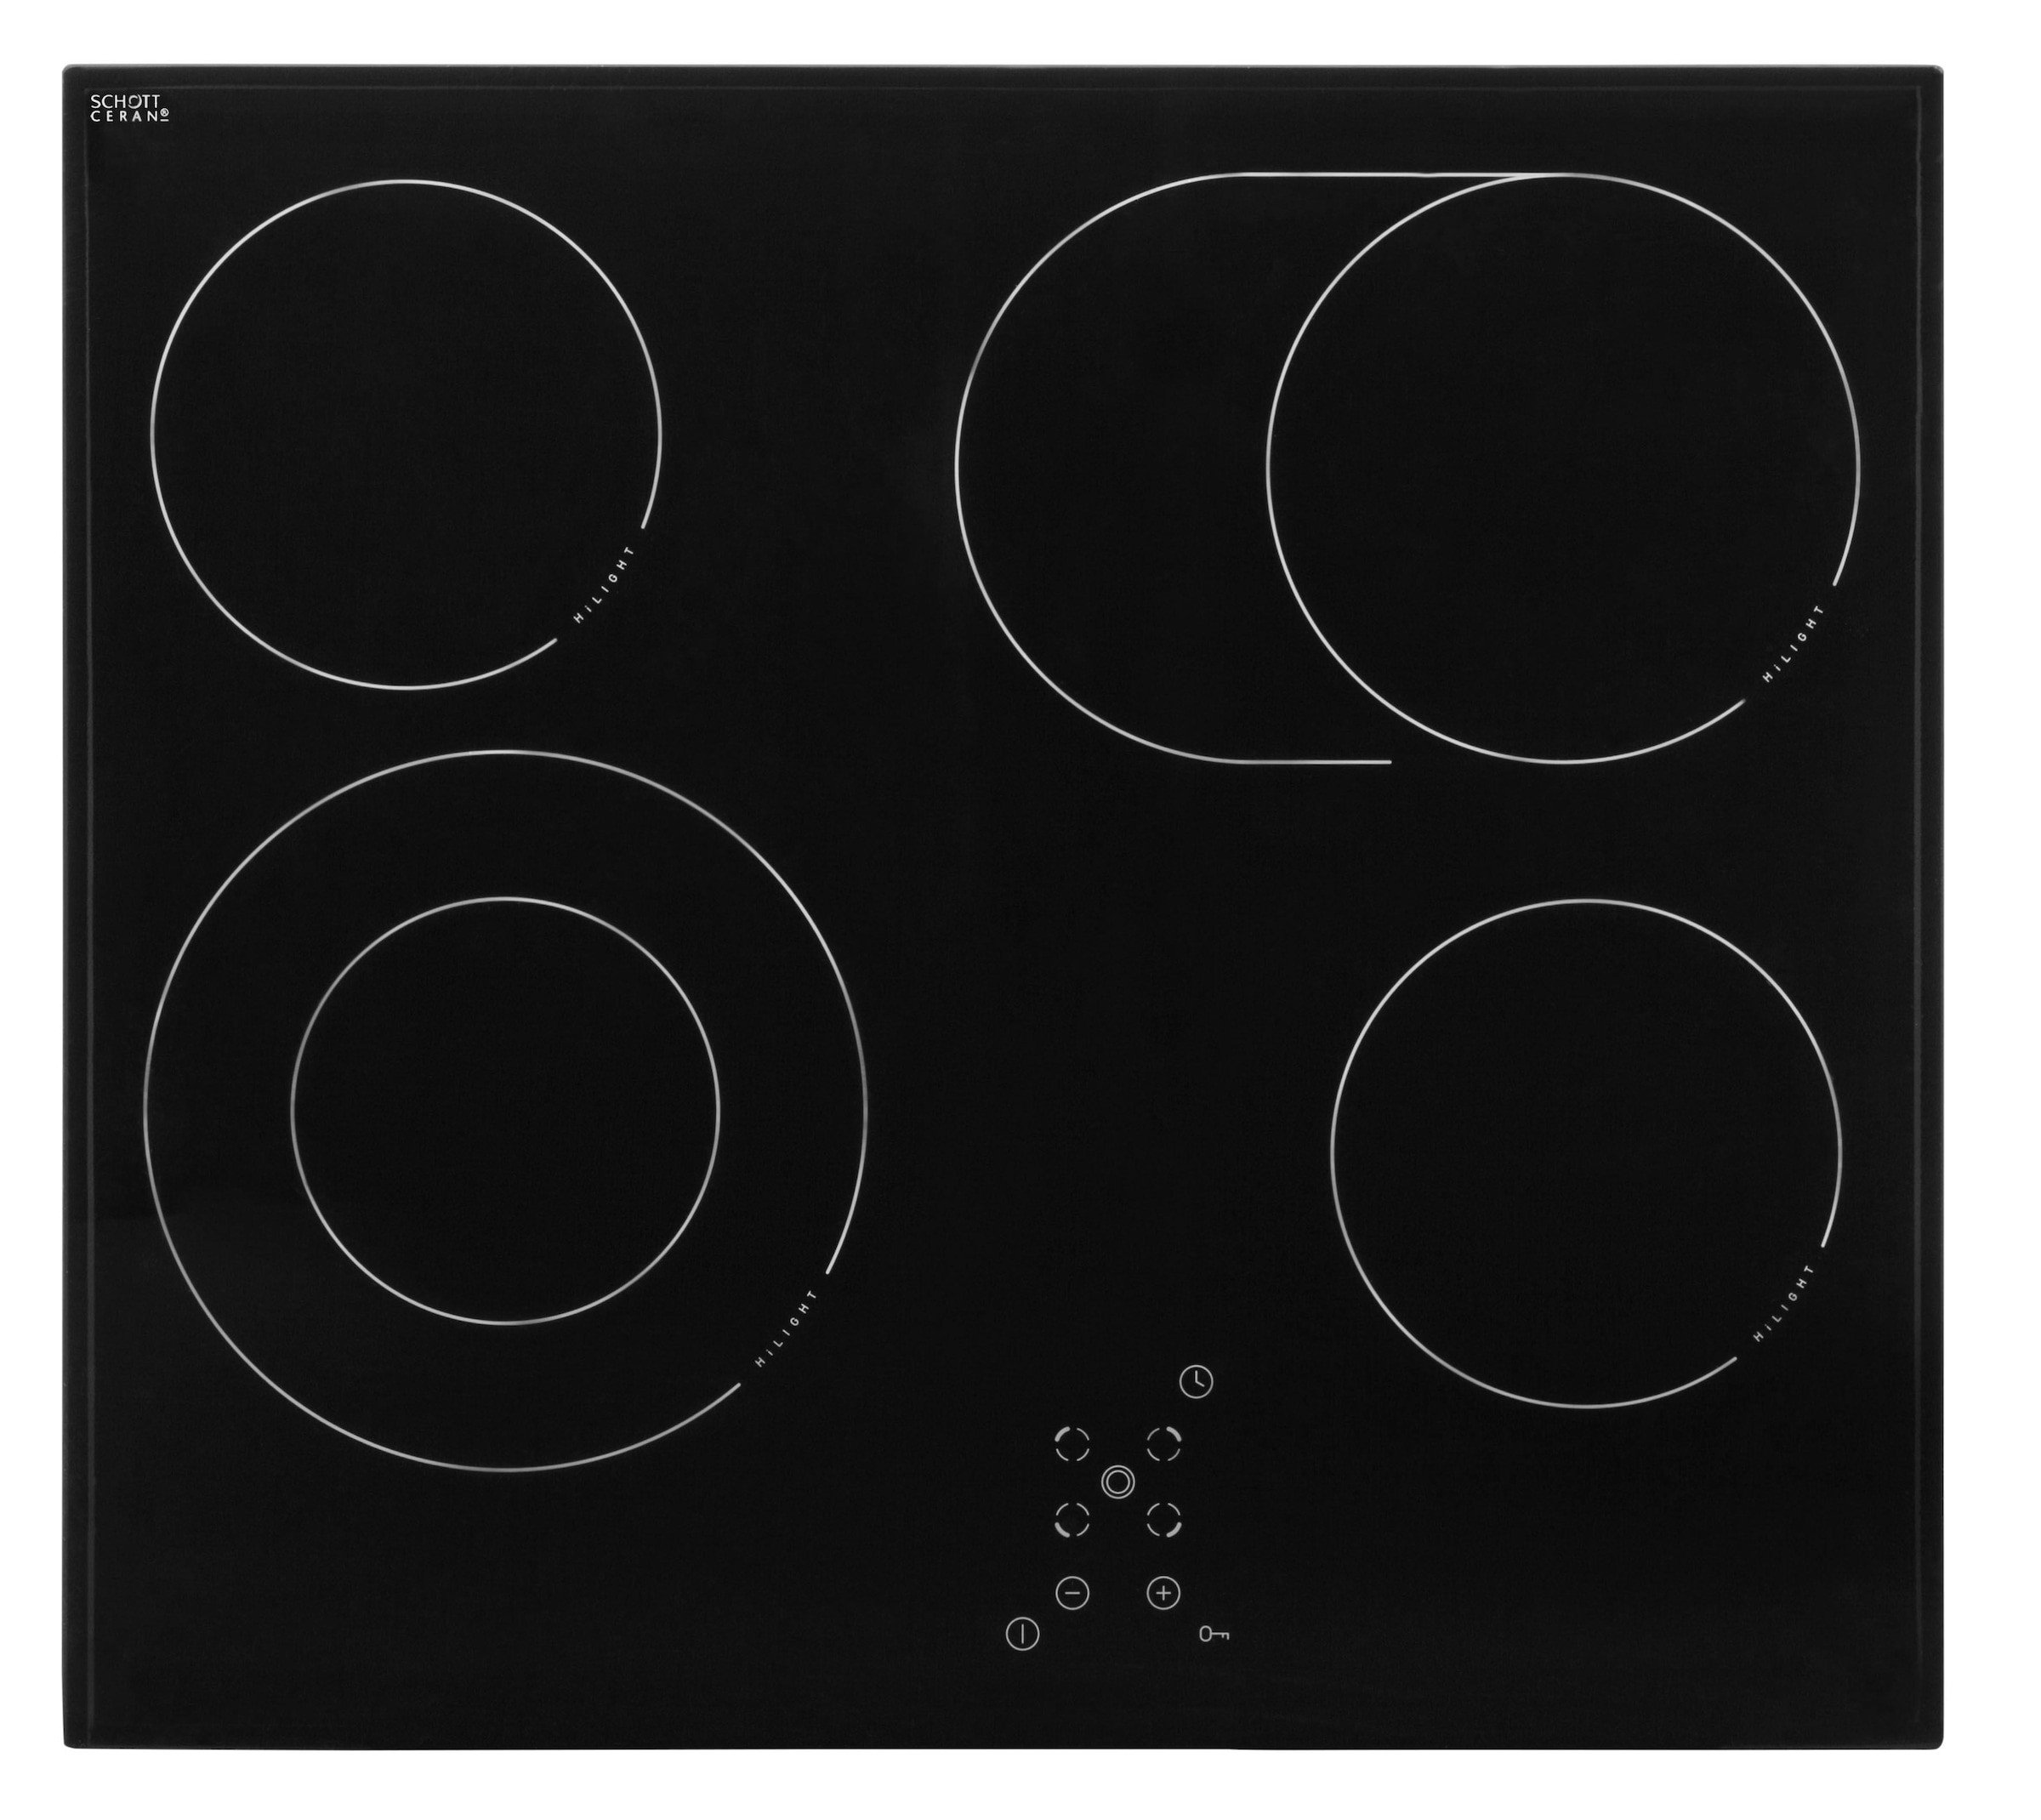 wiho Küchen Küchenzeile »Zell«, mit E-Geräten, Breite 280 cm kaufen bei OTTO